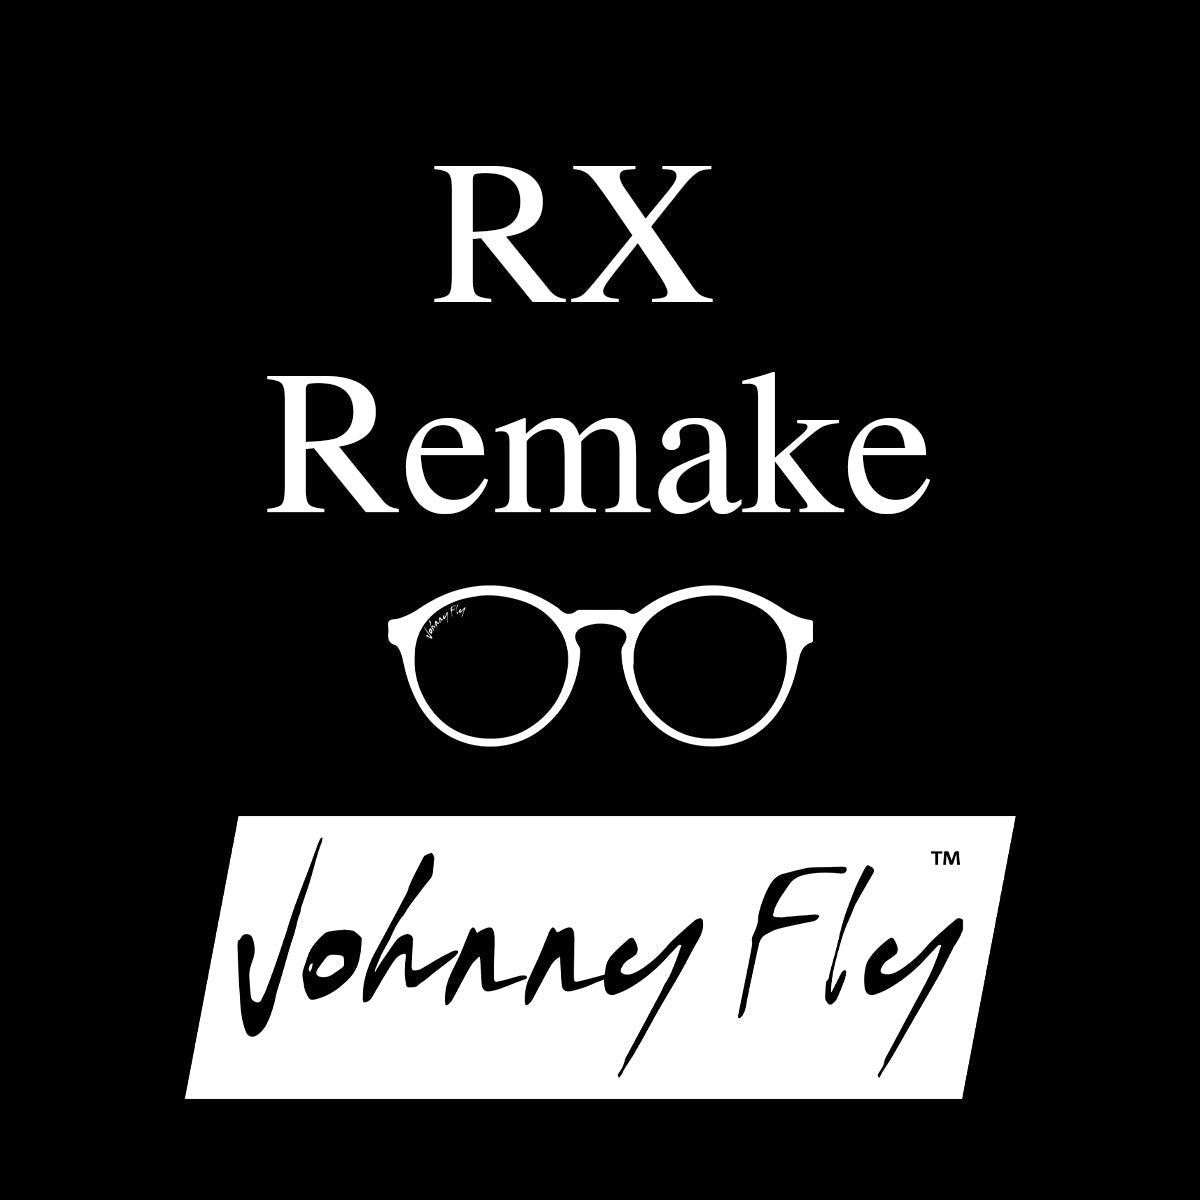 RX Remake / Redo (Plaats origineel ordernummer in notities)